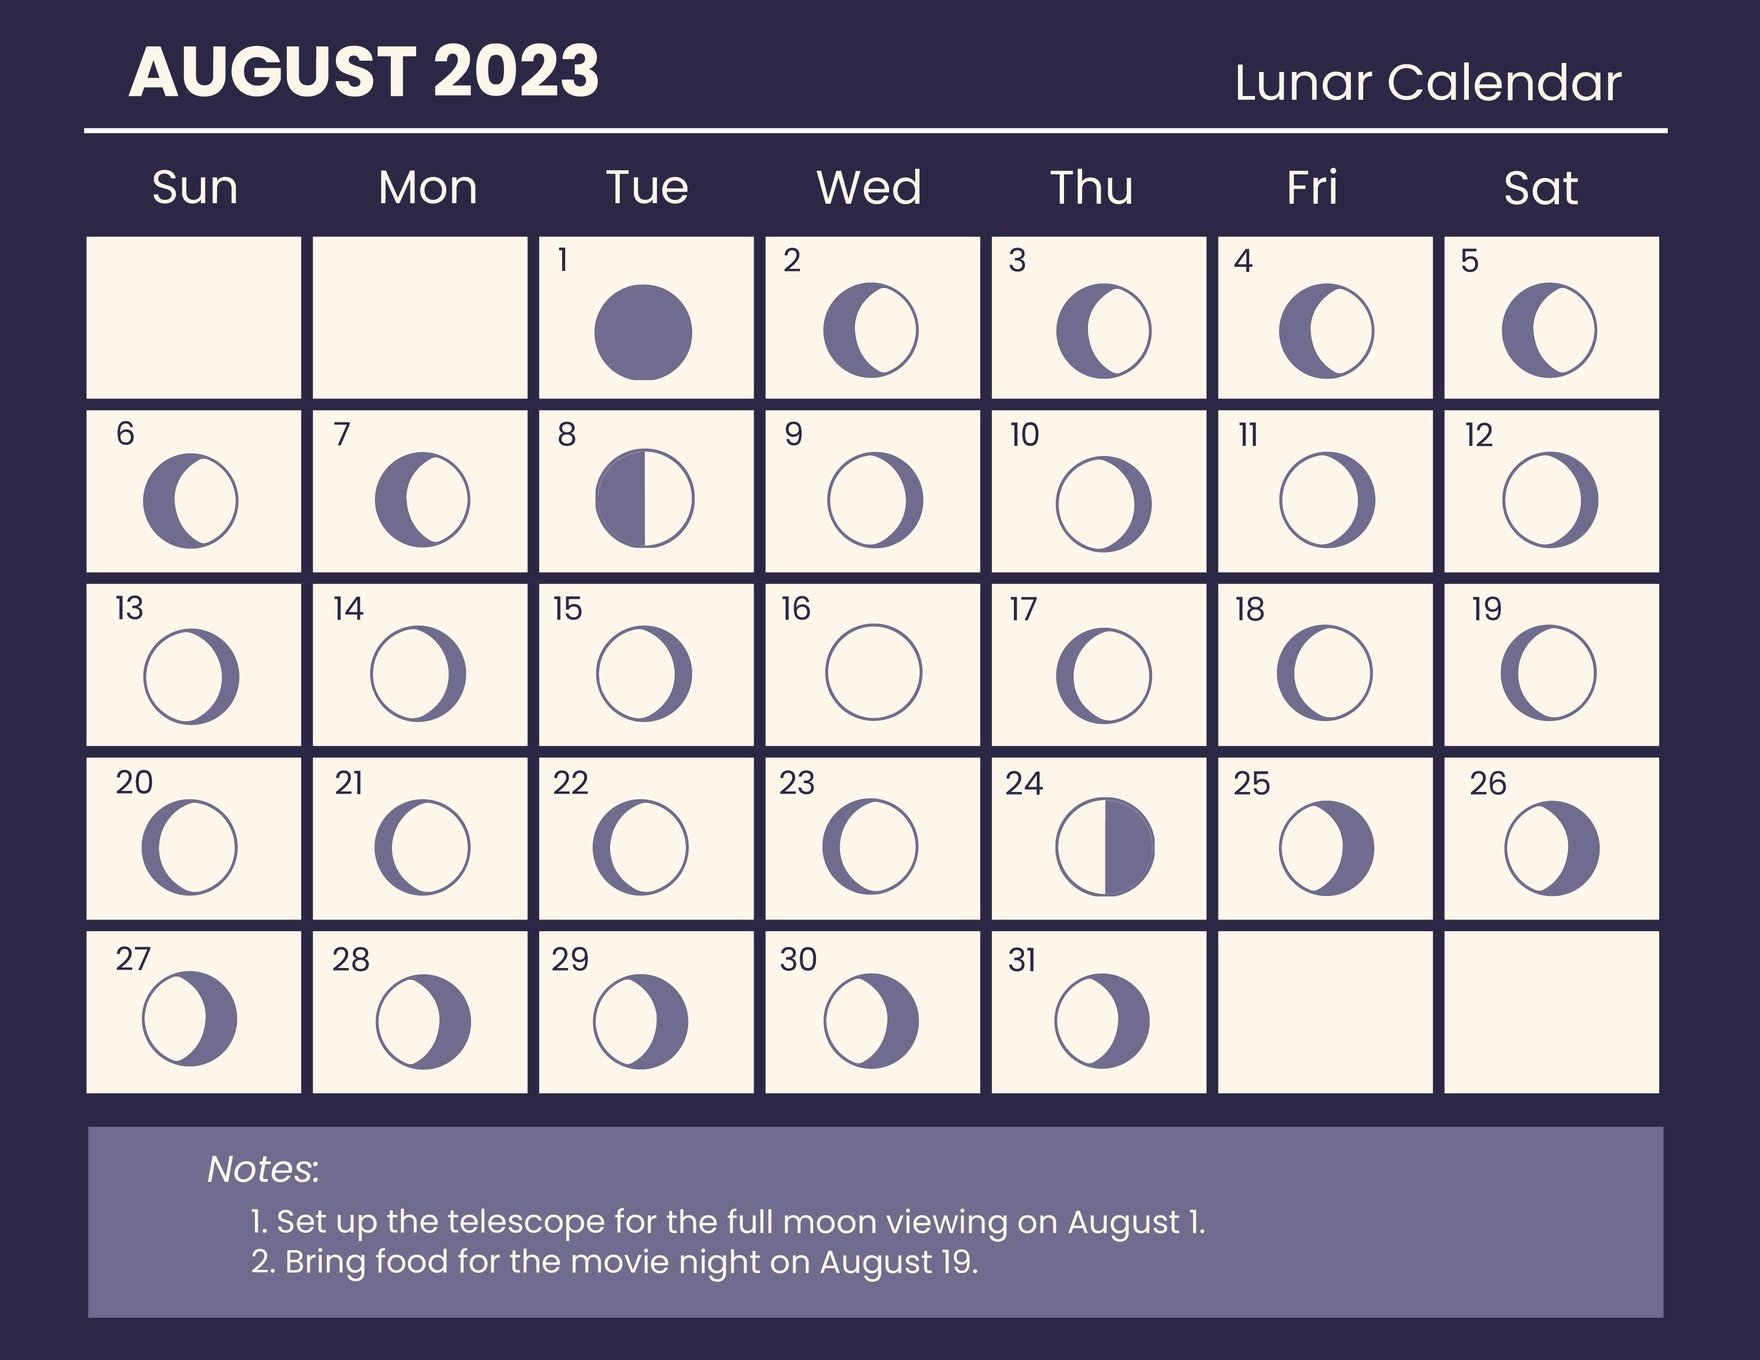 Lunar Calendar August 2023